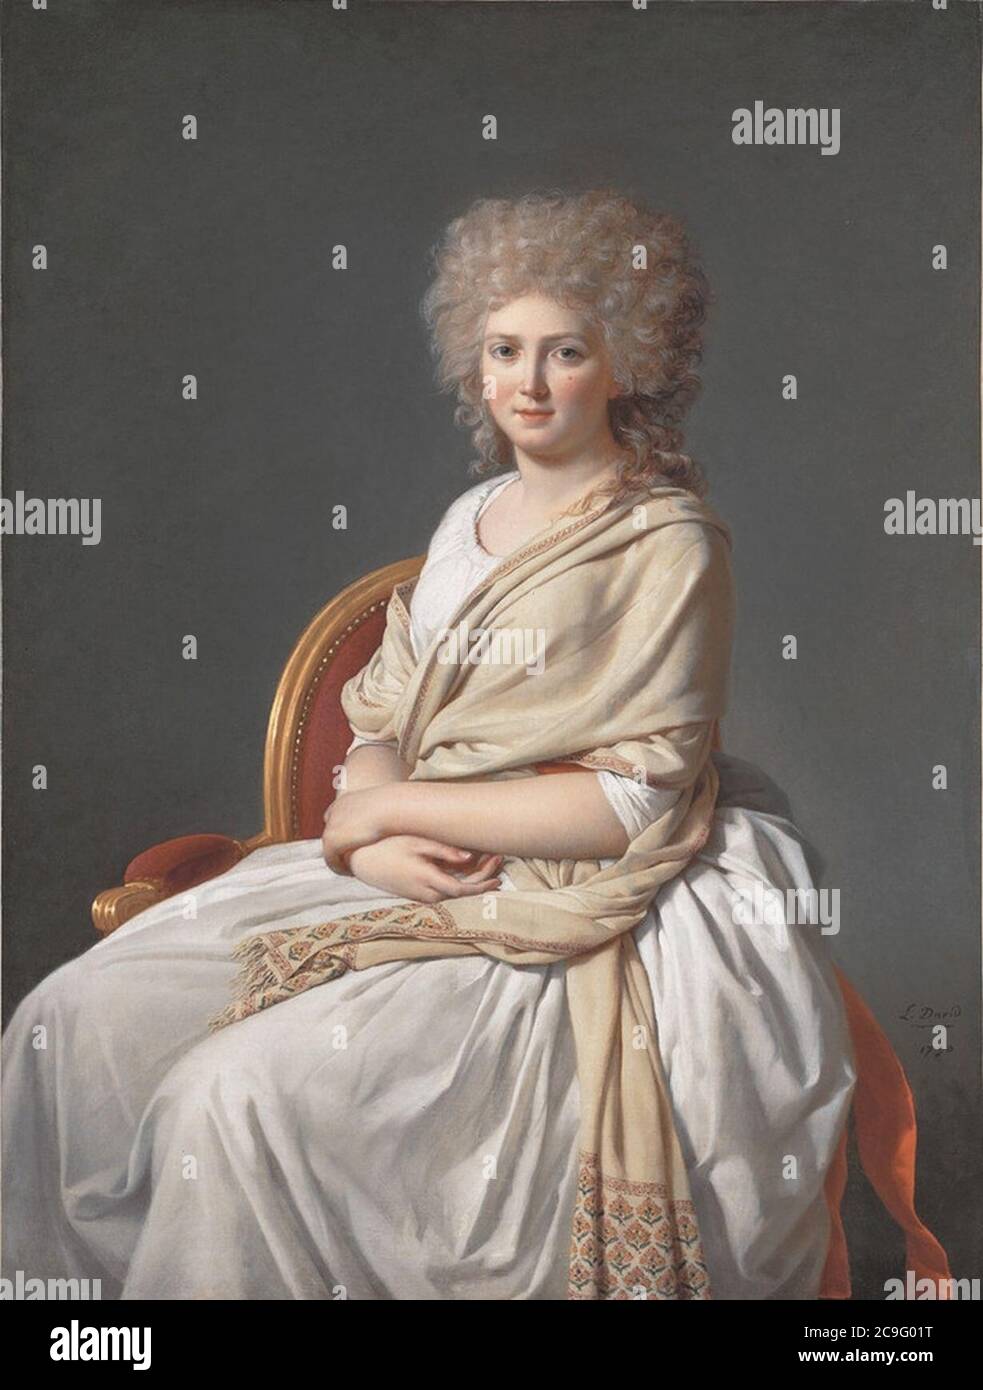 Jacques-Louis David, Anne-Marie-Louise Thélusson, Comtesse de Sorcy (1790). Stock Photo